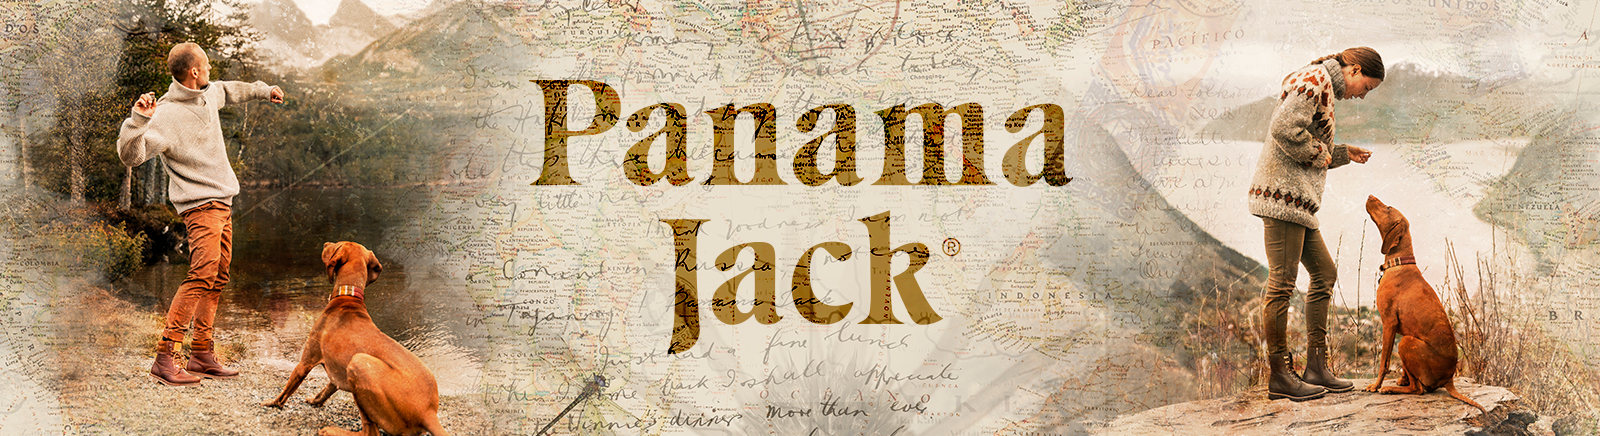 Prange: Panama Jack Winterschuhe für Herren online shoppen